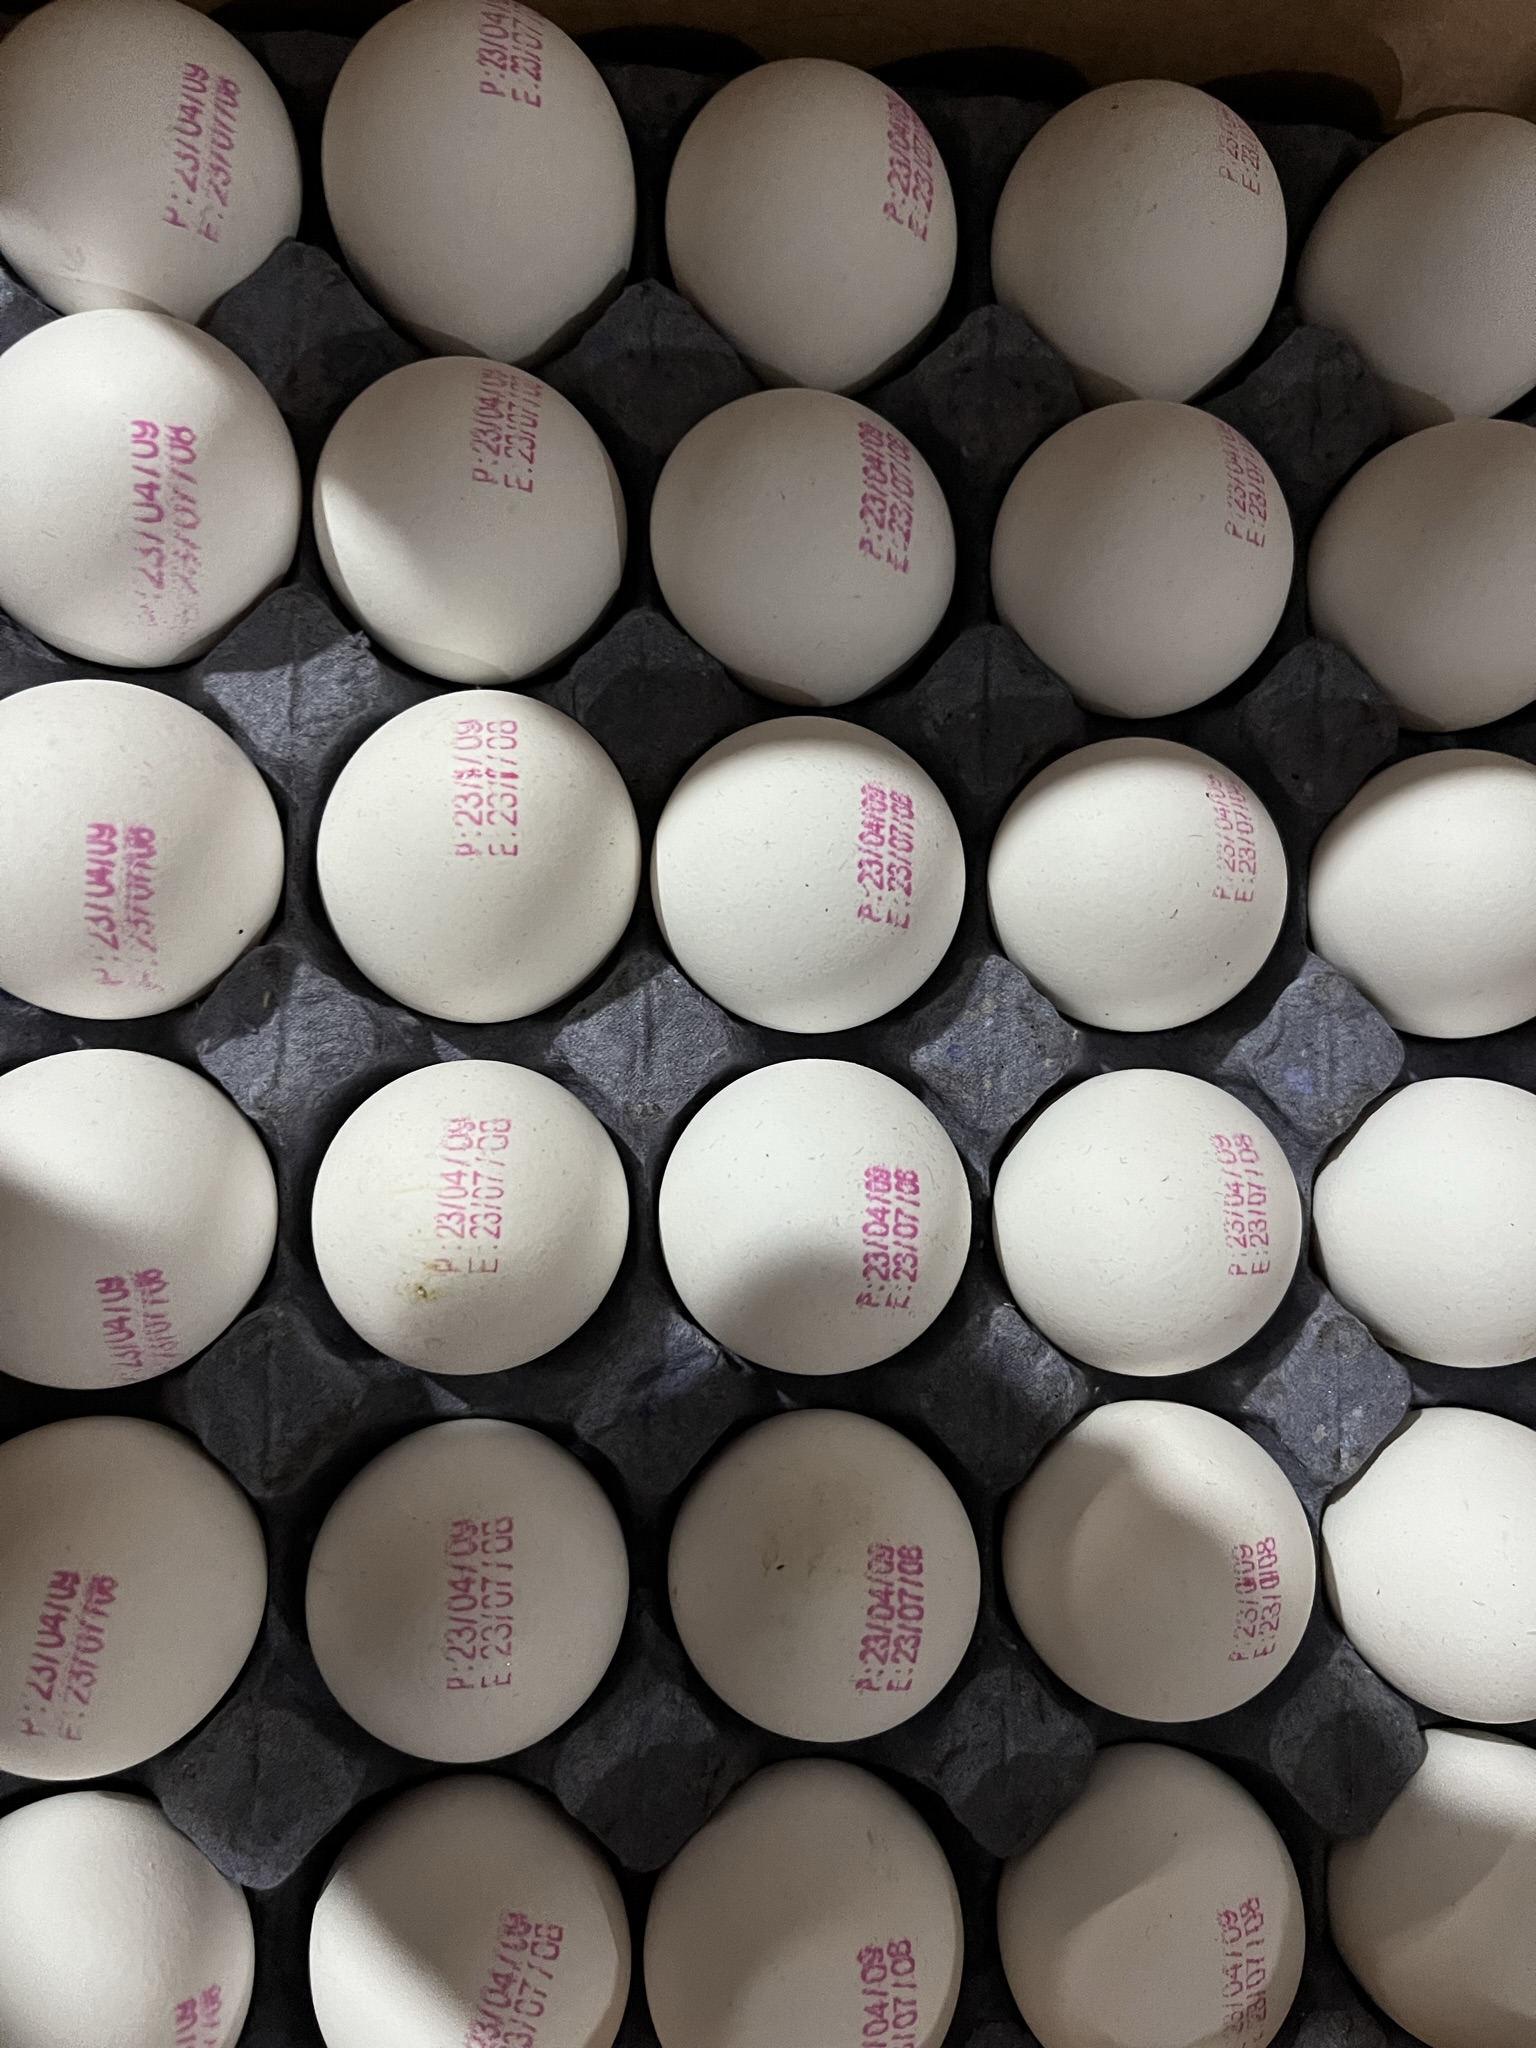 شانه بنفش ، پرینت میلادی تاریخ تولید و انقضا روی تخم مرغ